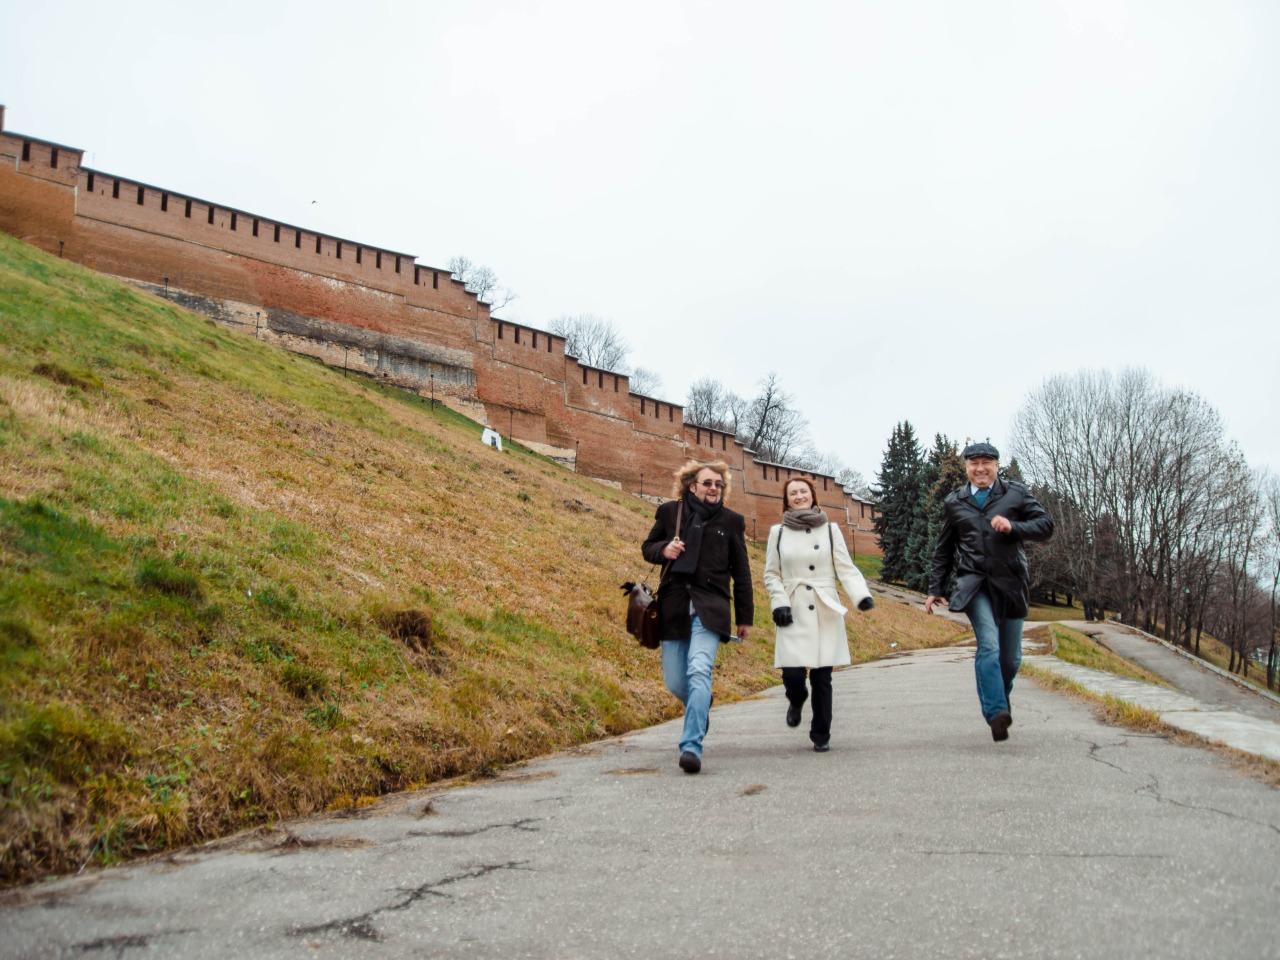 Информативная прогулка по Нижнему Новгороду | Цена 8100₽, отзывы, описание экскурсии